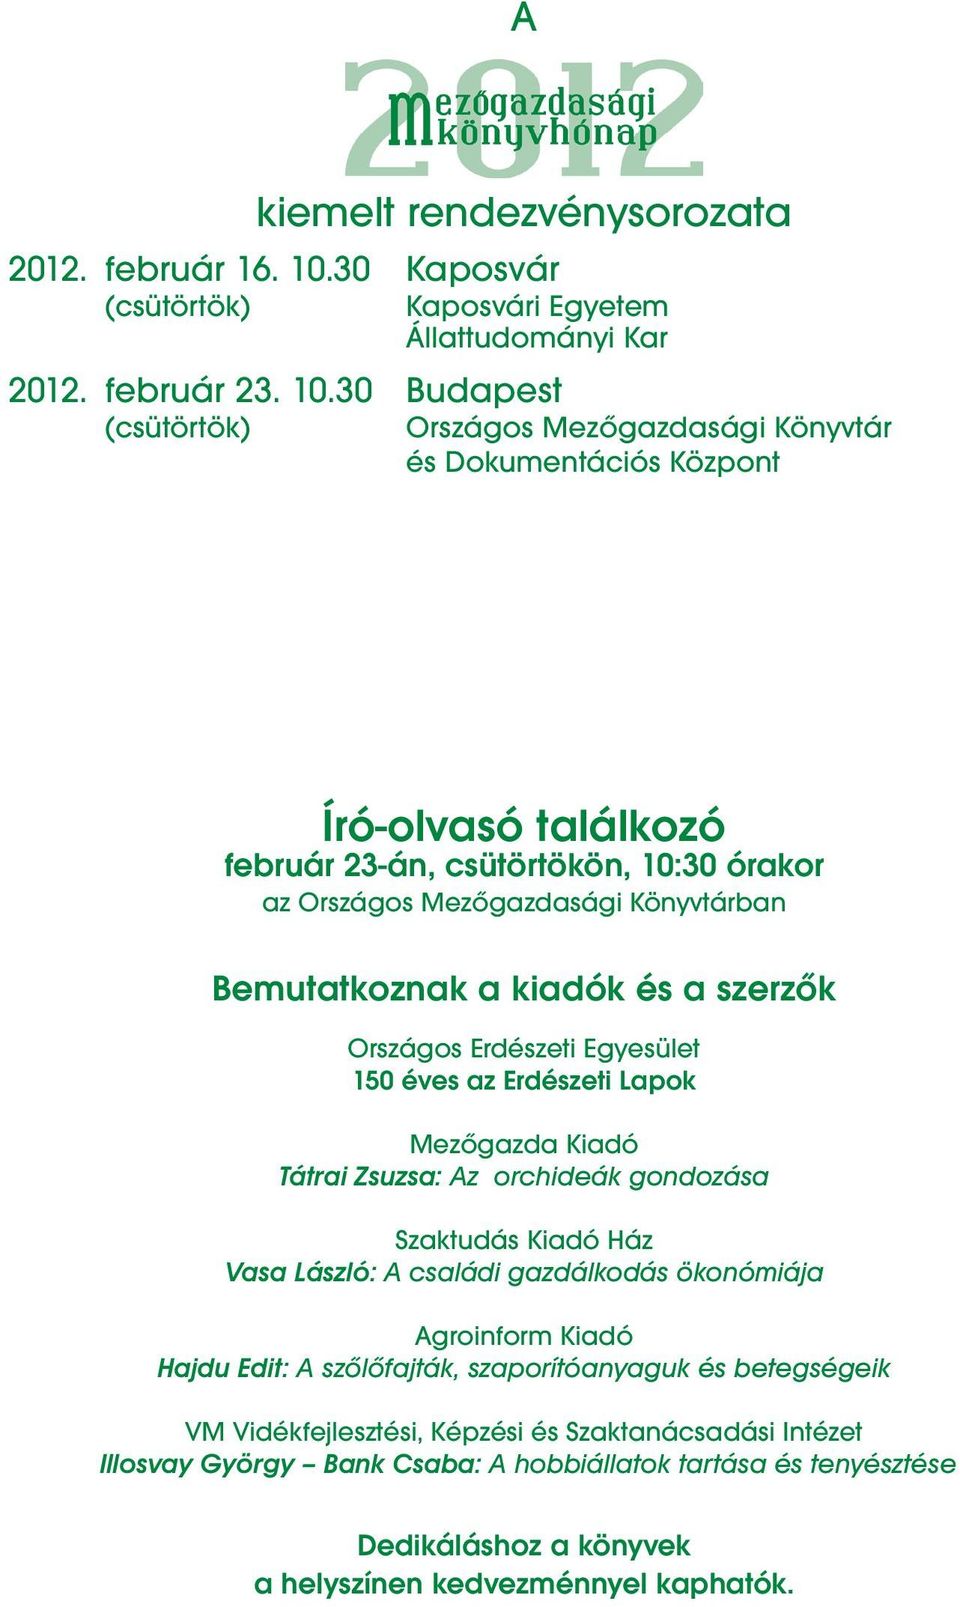 30 Budapest (csütörtök) Országos Mezőgazdasági Könyvtár és Dokumentációs Központ Író-olvasó találkozó február 23-án, csütörtökön, 10:30 órakor az Országos Mezőgazdasági